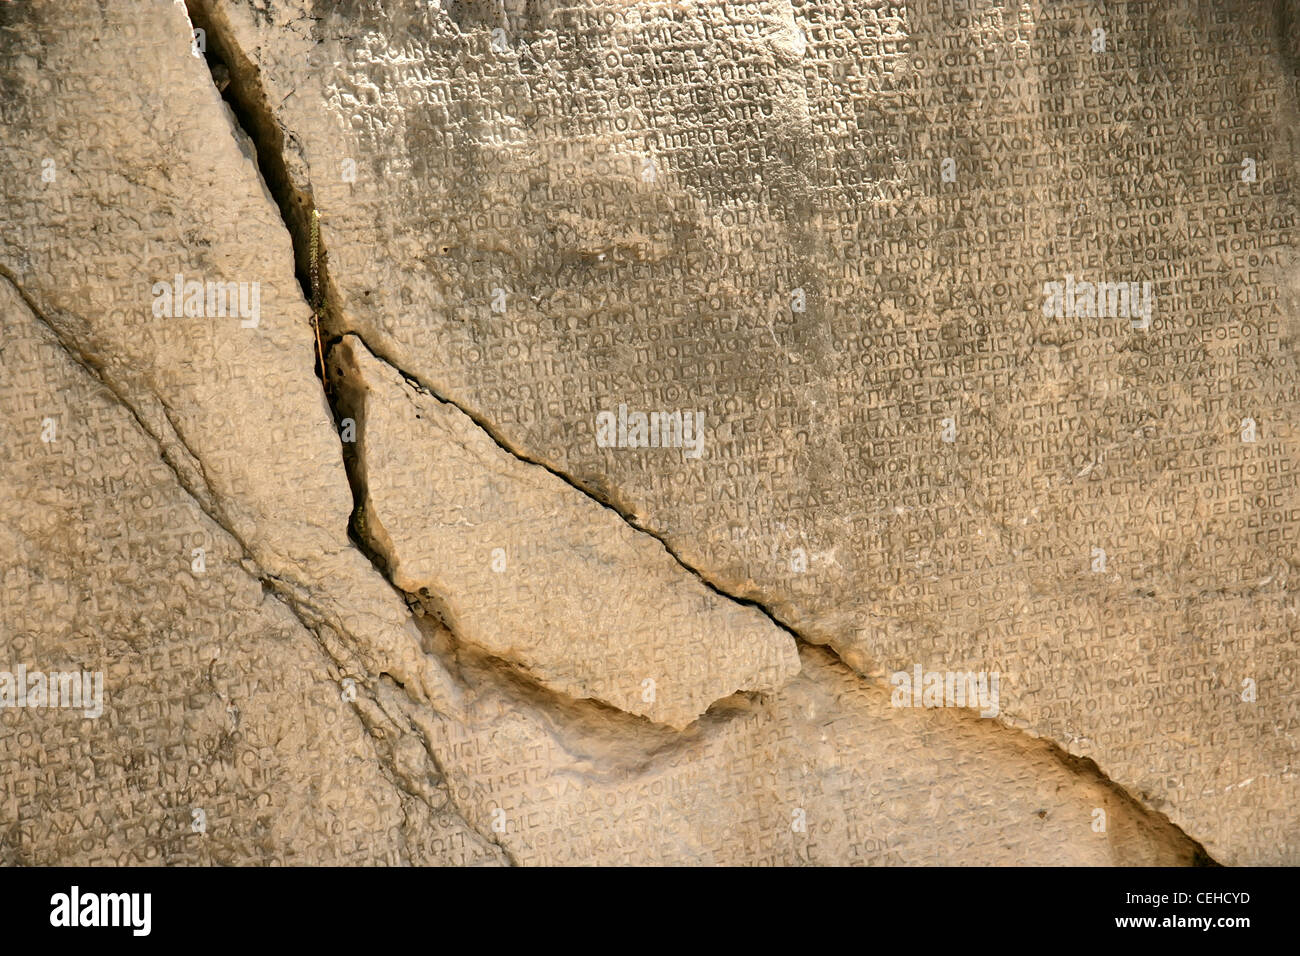 Arsameia, Schlafwagen, Adiyaman, Südosten der Türkei: Anatolien größte Inschrift in griechischer Sprache Stockfoto